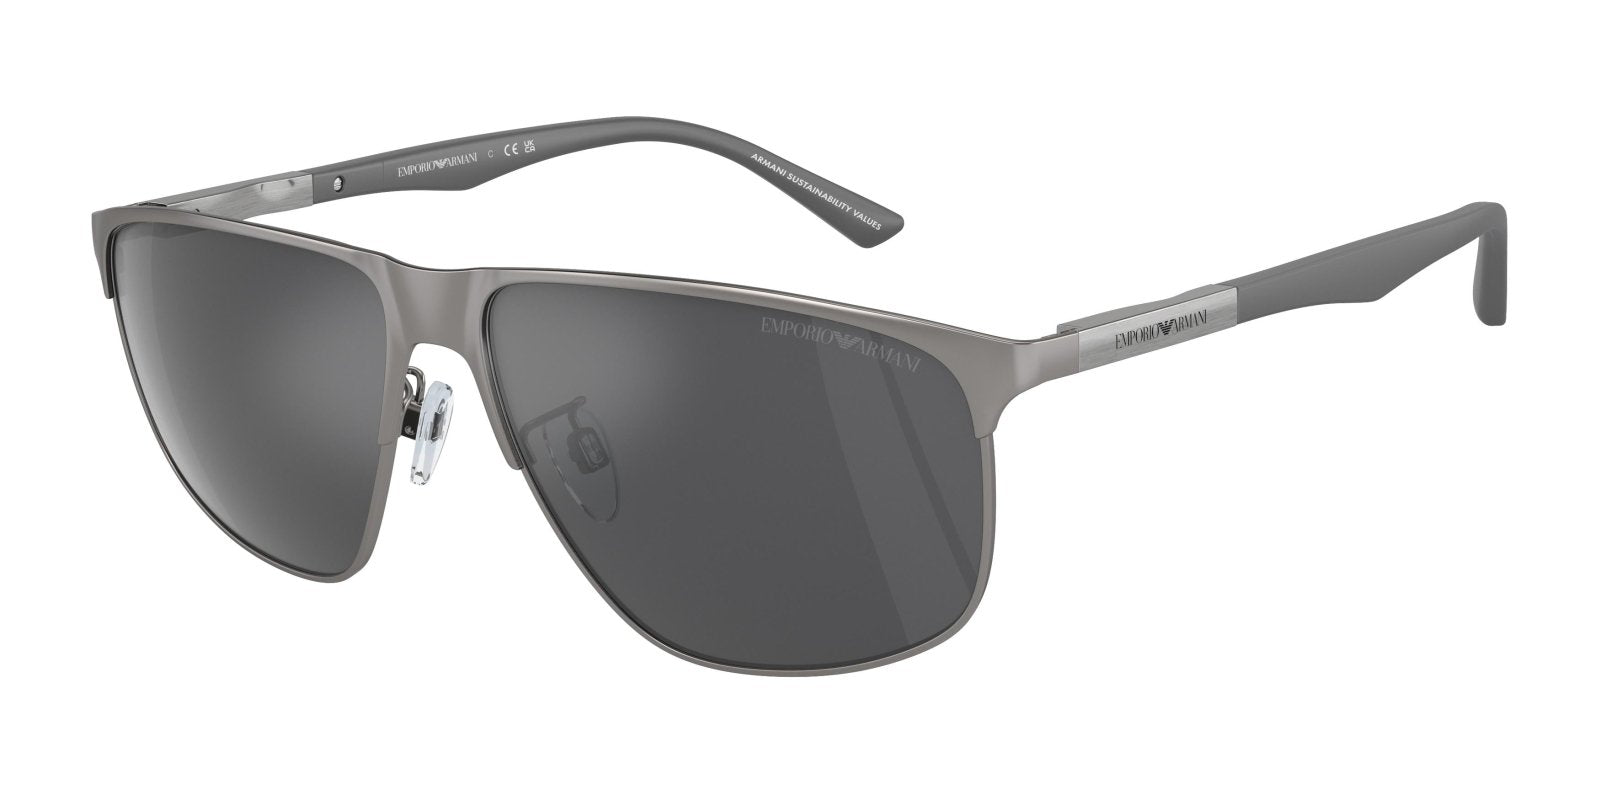  Emporio Armani 2094 Sunglasses 